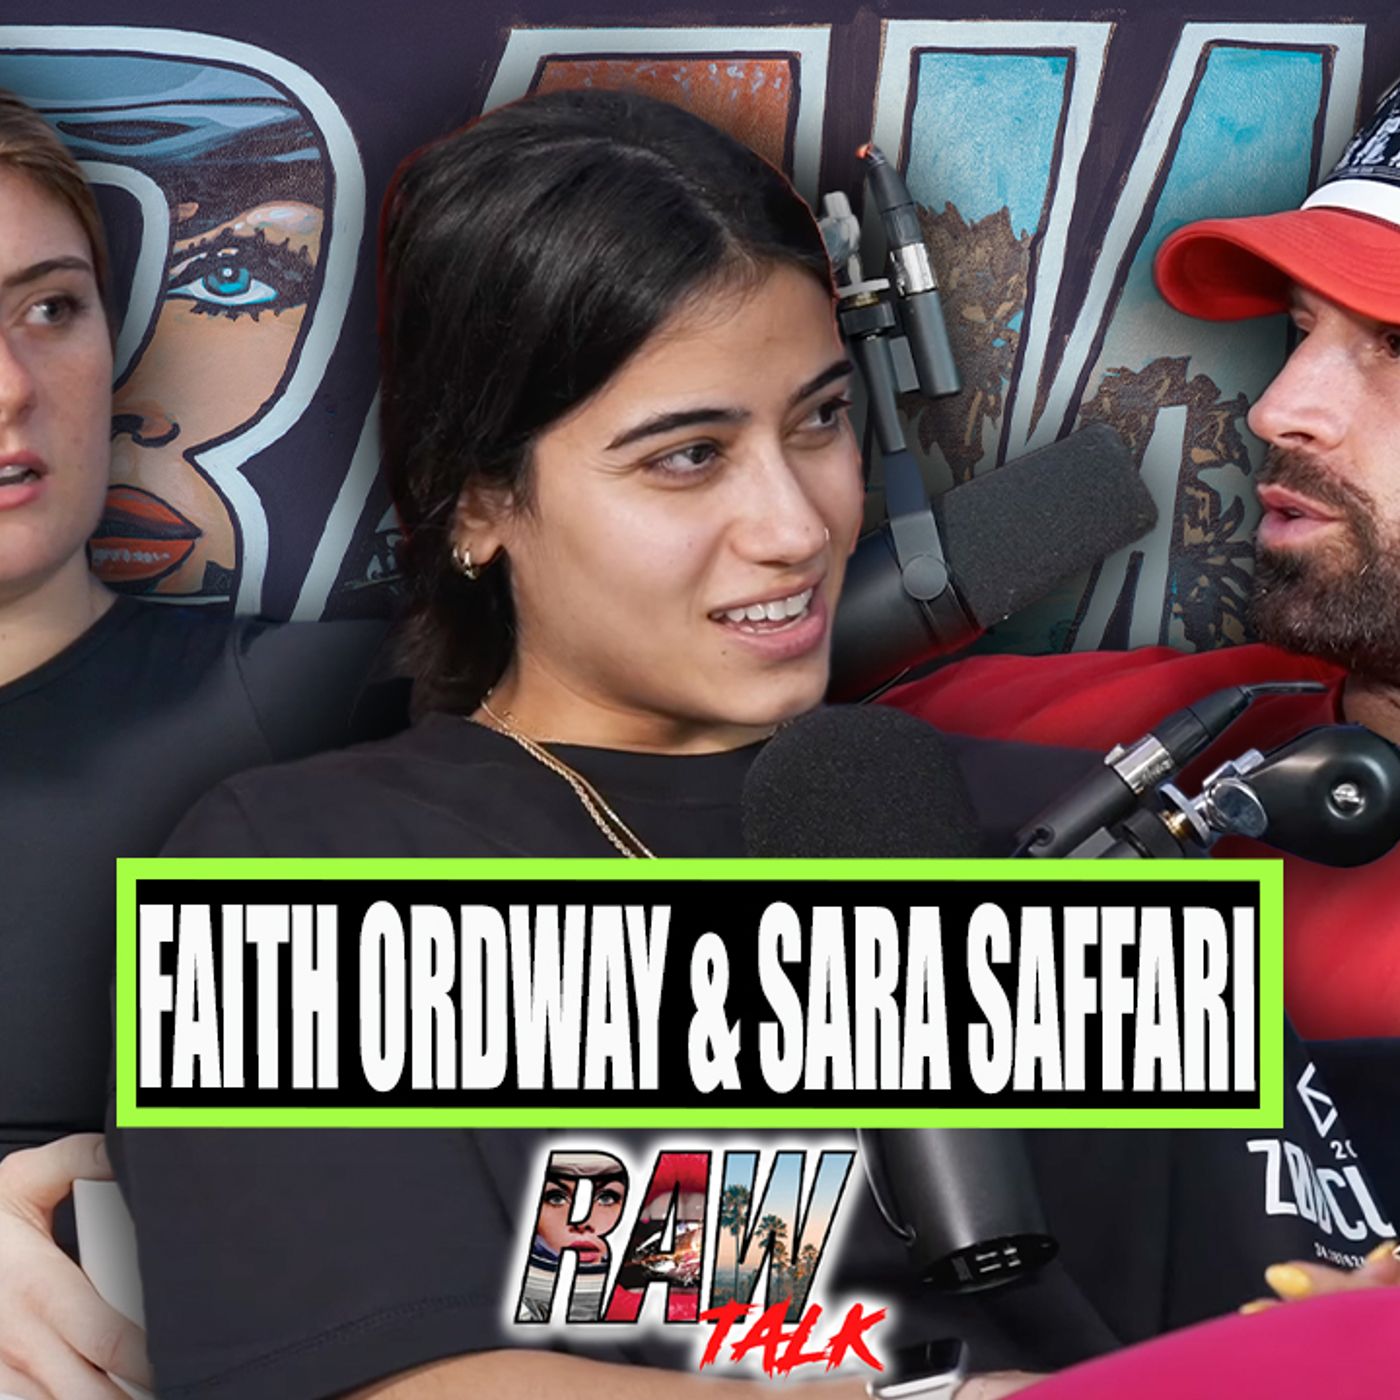 Faith Ordway & Sara Saffari Are Official!